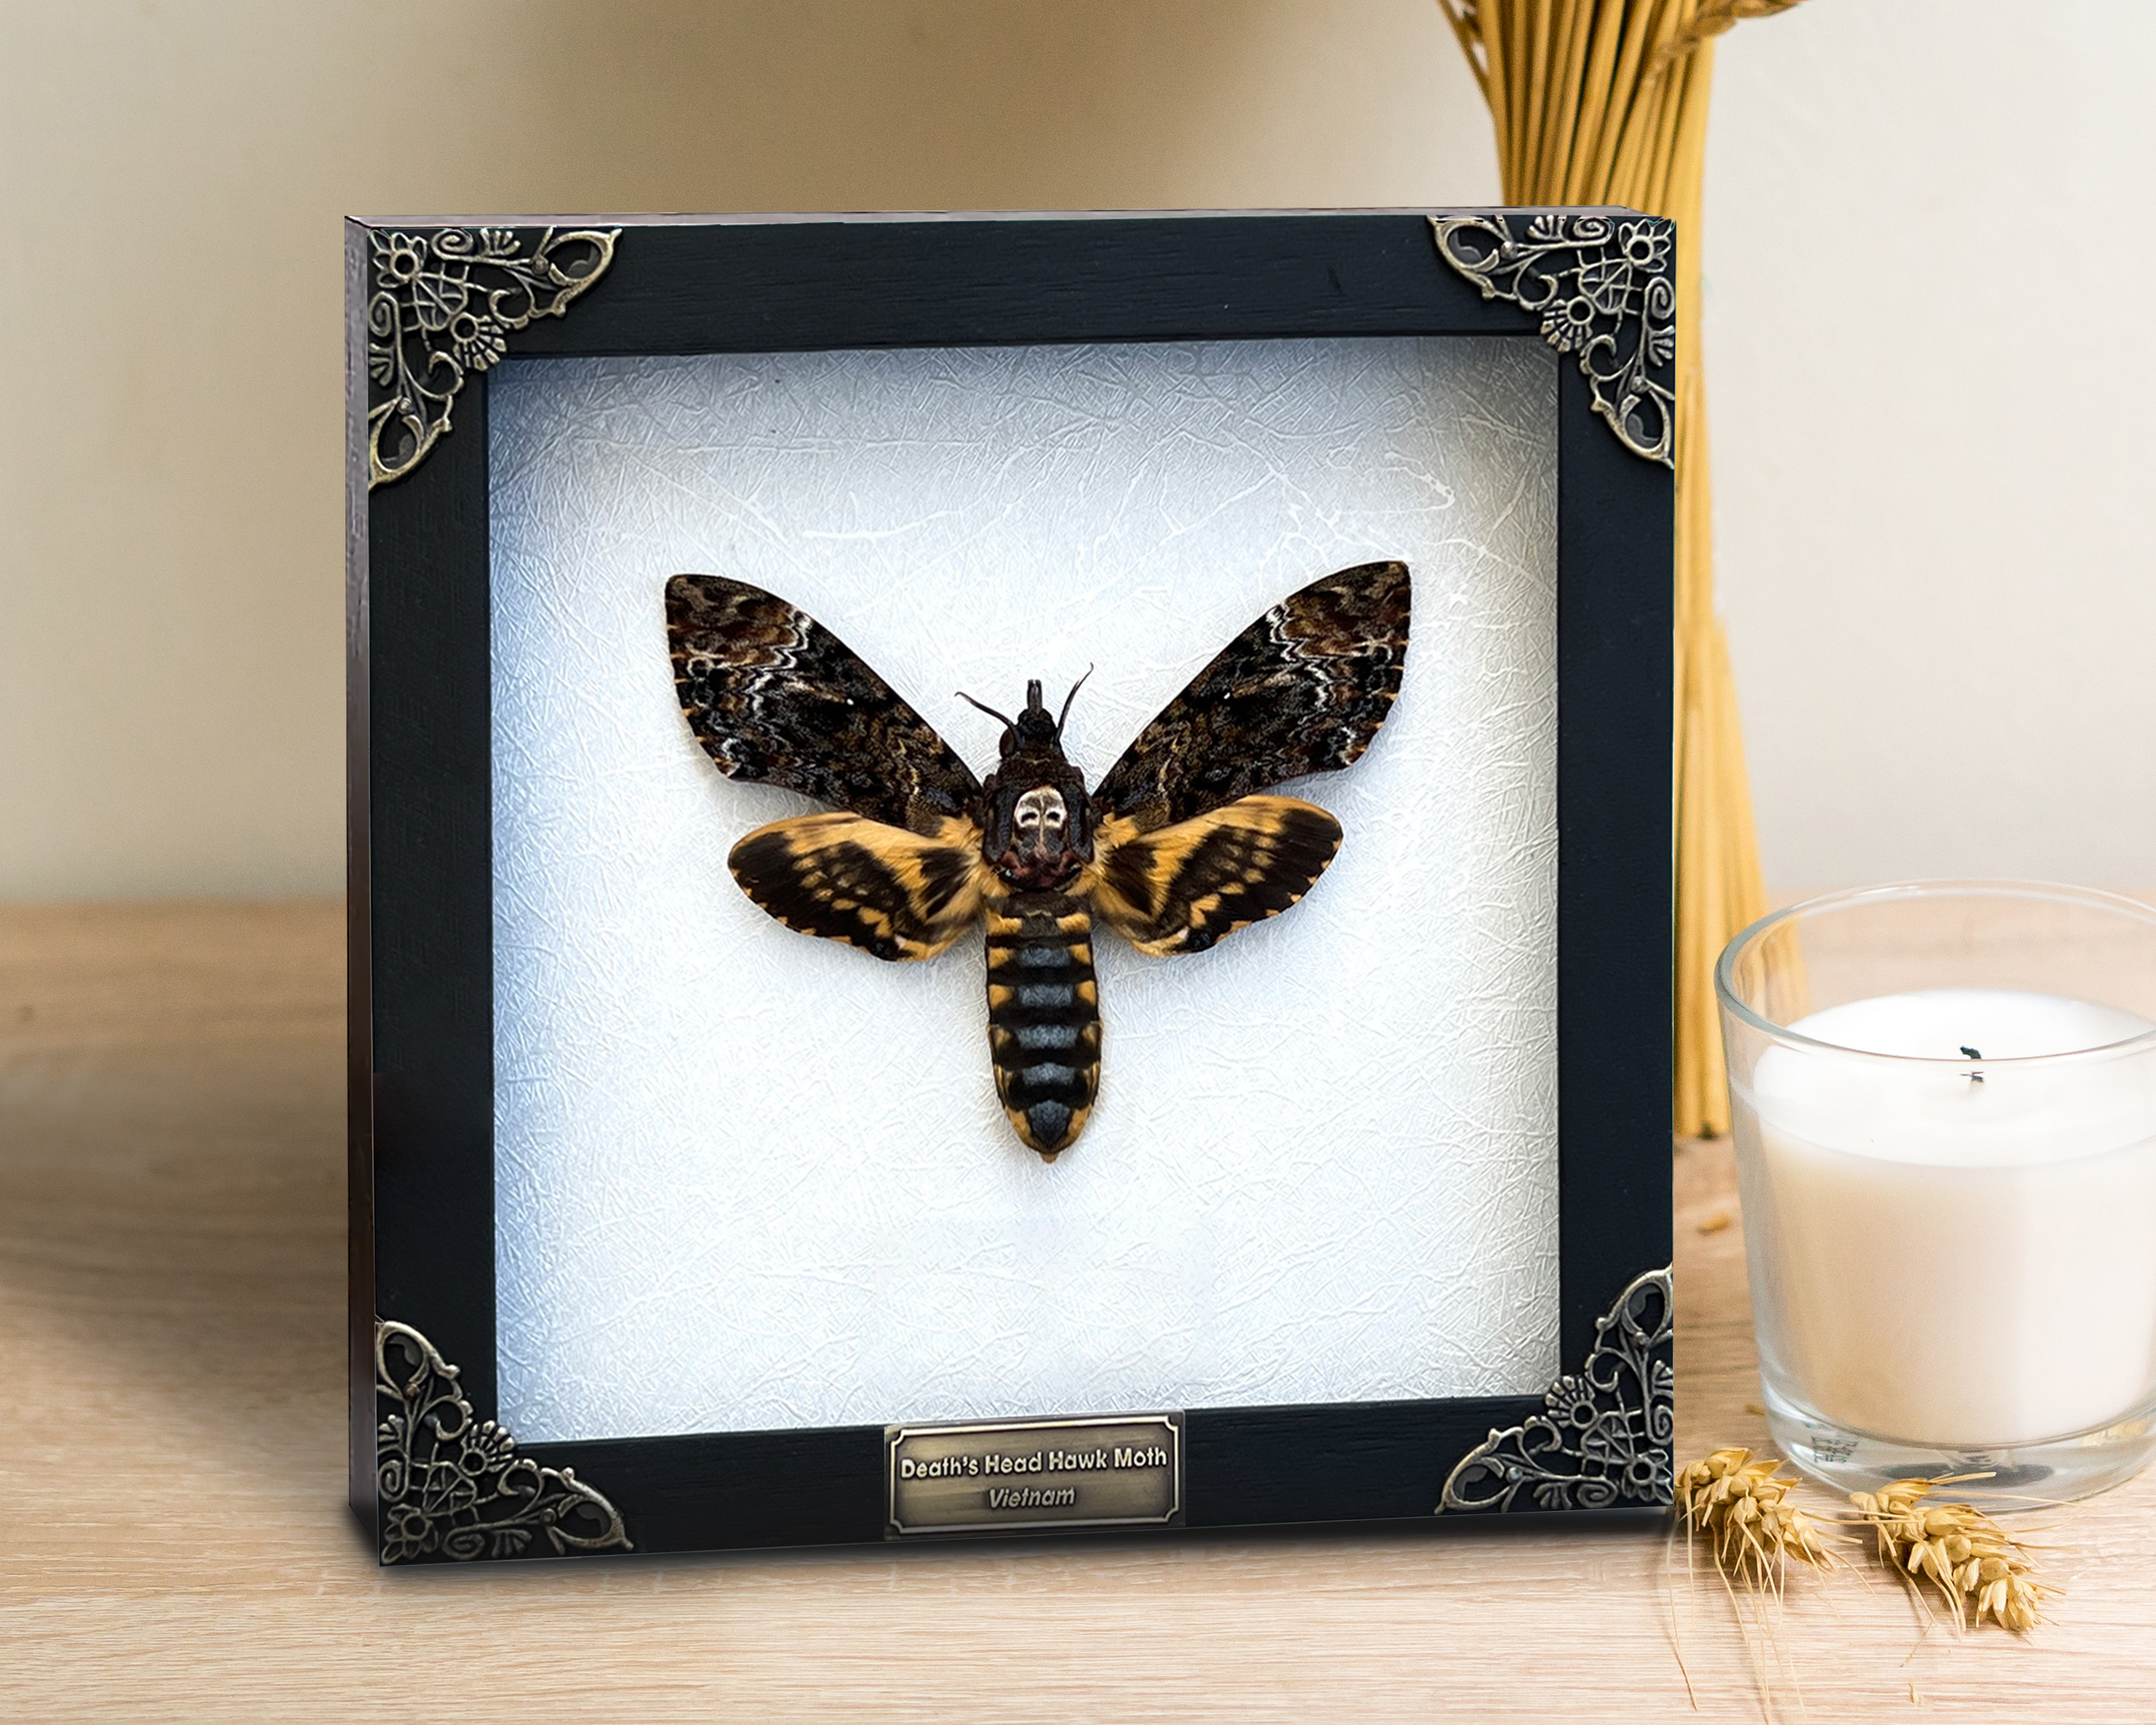 Real Death Head Moth Acherontia Entomology Taxidermy Specimen Gothic Wall Decor Framed K18-01-TR